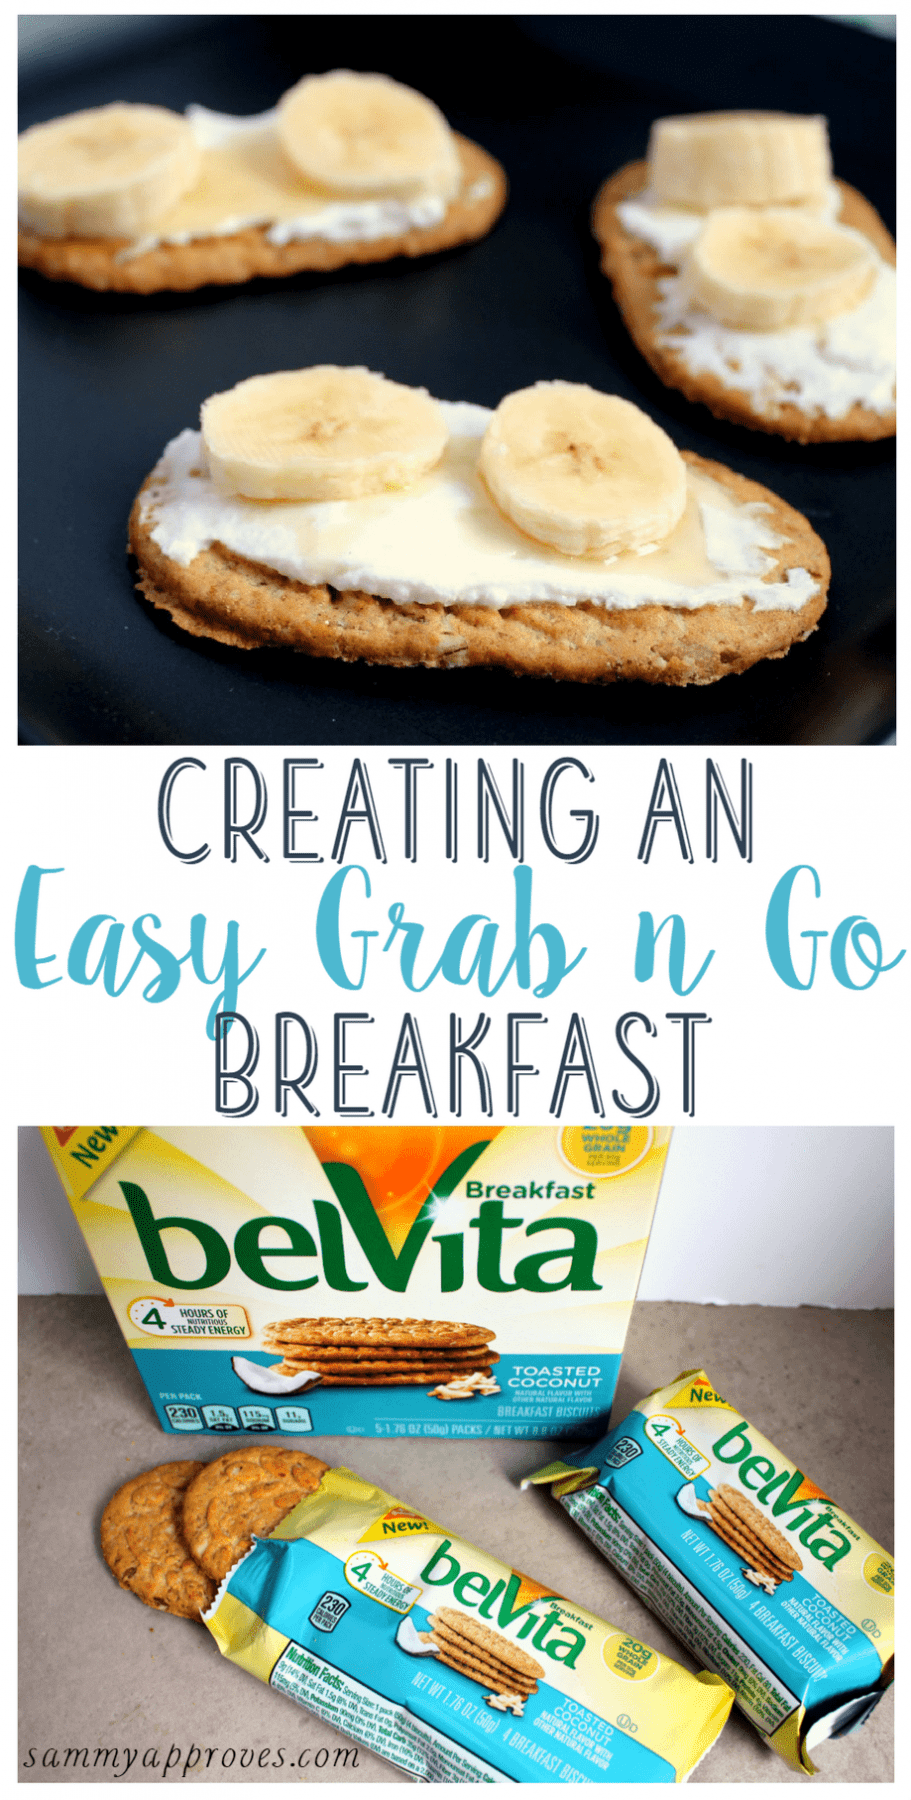 Creating an Easy Grab "n" Go Breakfast